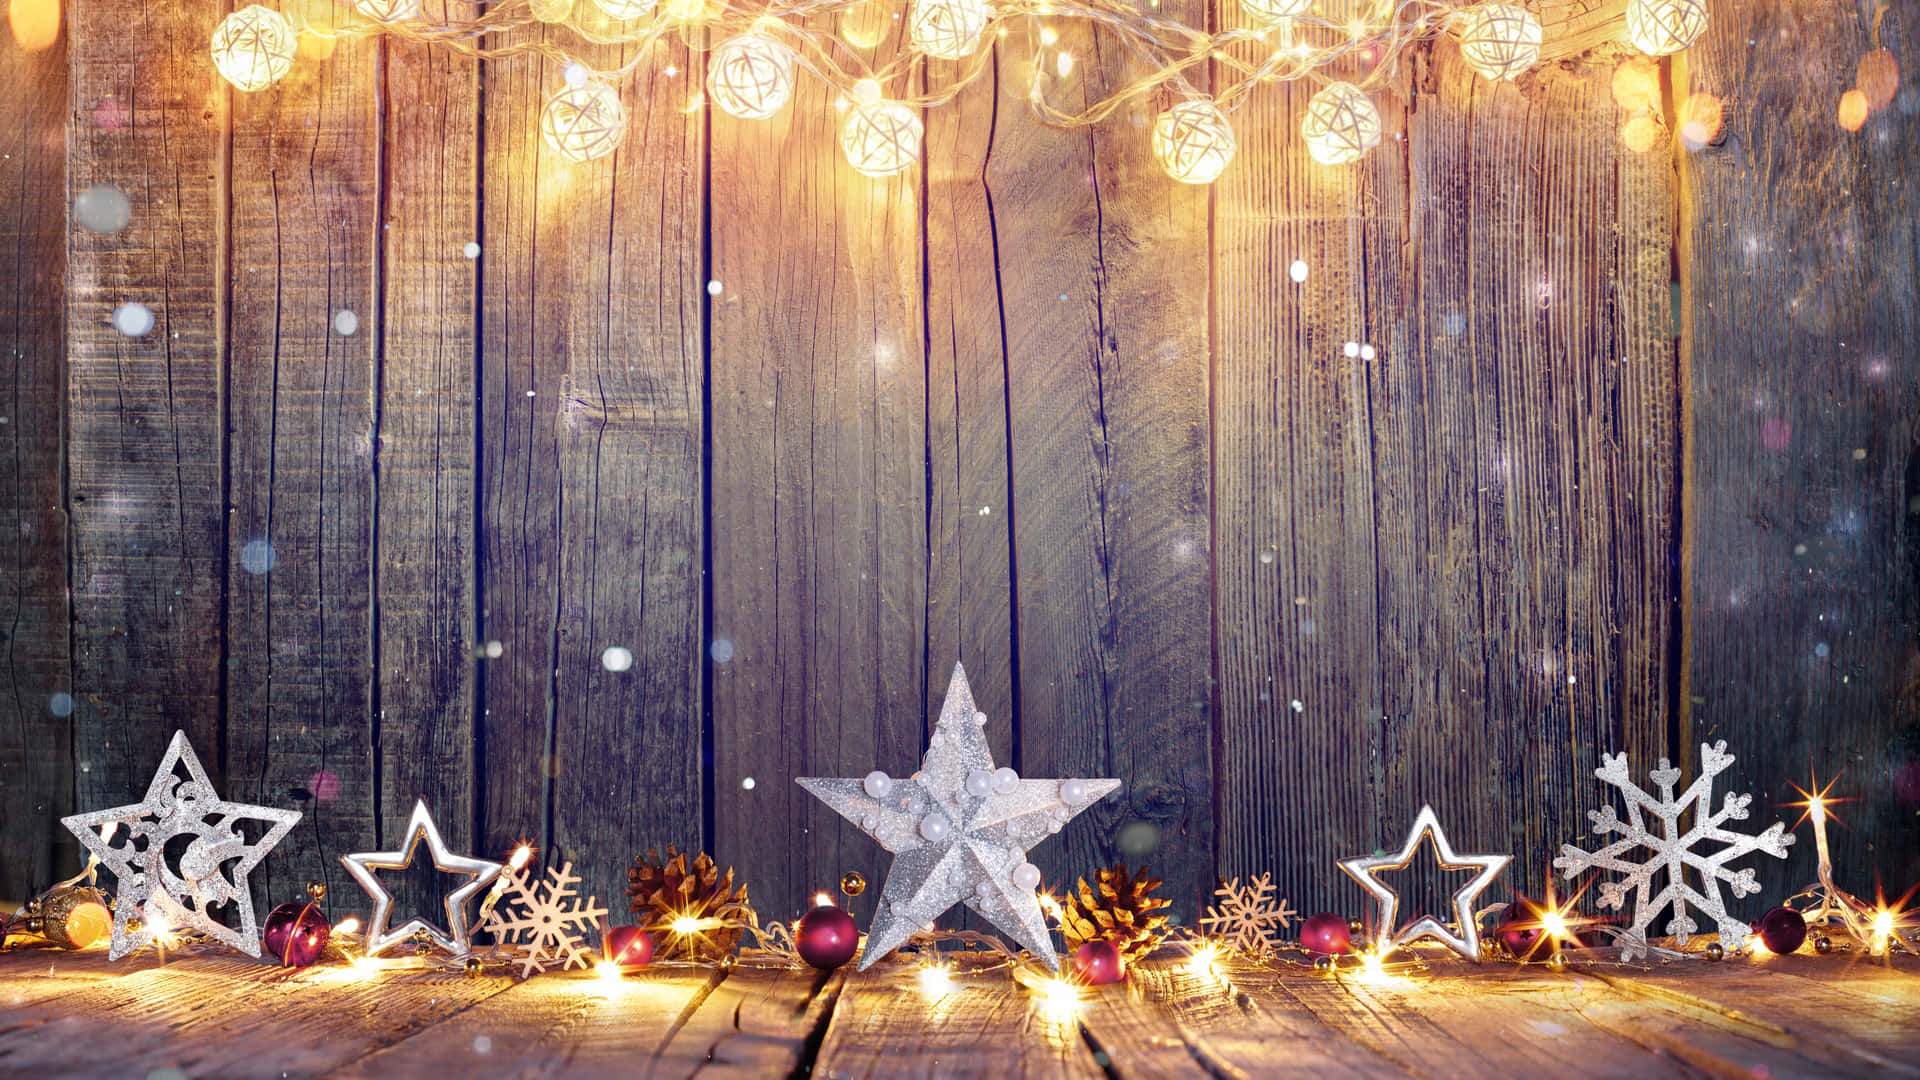 Hình nền sao Giáng Sinh sẽ khiến bạn thấy trong lòng hân hoan và phấn khởi. Những vì sao lấp lánh trên nền đen sẽ đem lại cho bạn sự cảm thụ về một mùa Giáng Sinh tràn đầy ánh sáng và yêu thương.